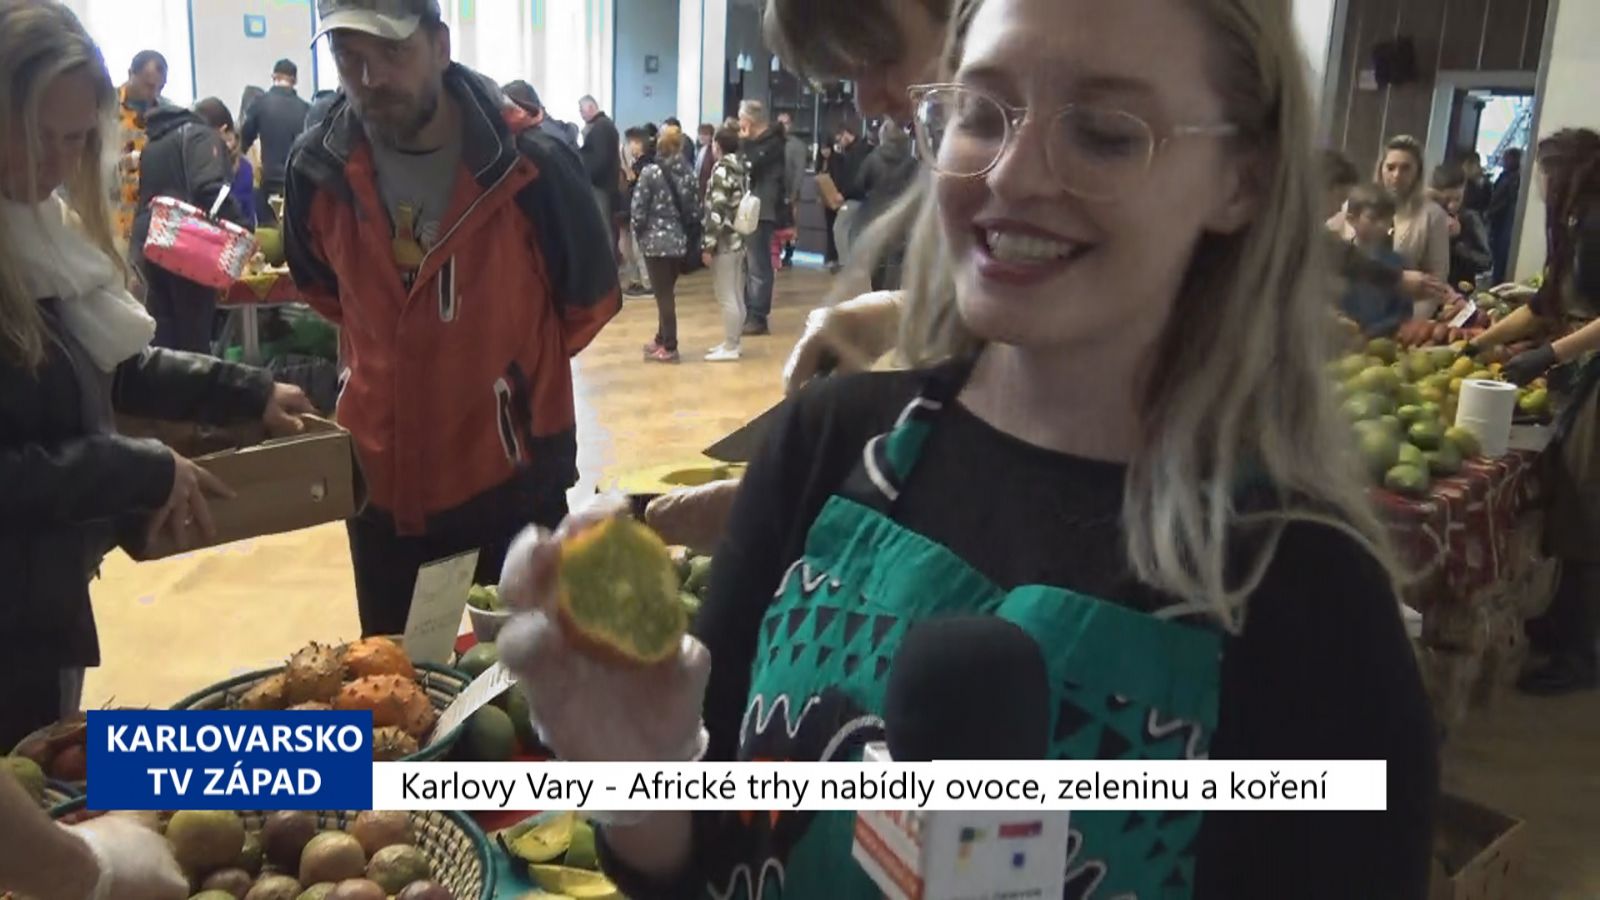 Karlovy Vary: Africké trhy nabídly ovoce, zeleninu a koření (TV Západ)